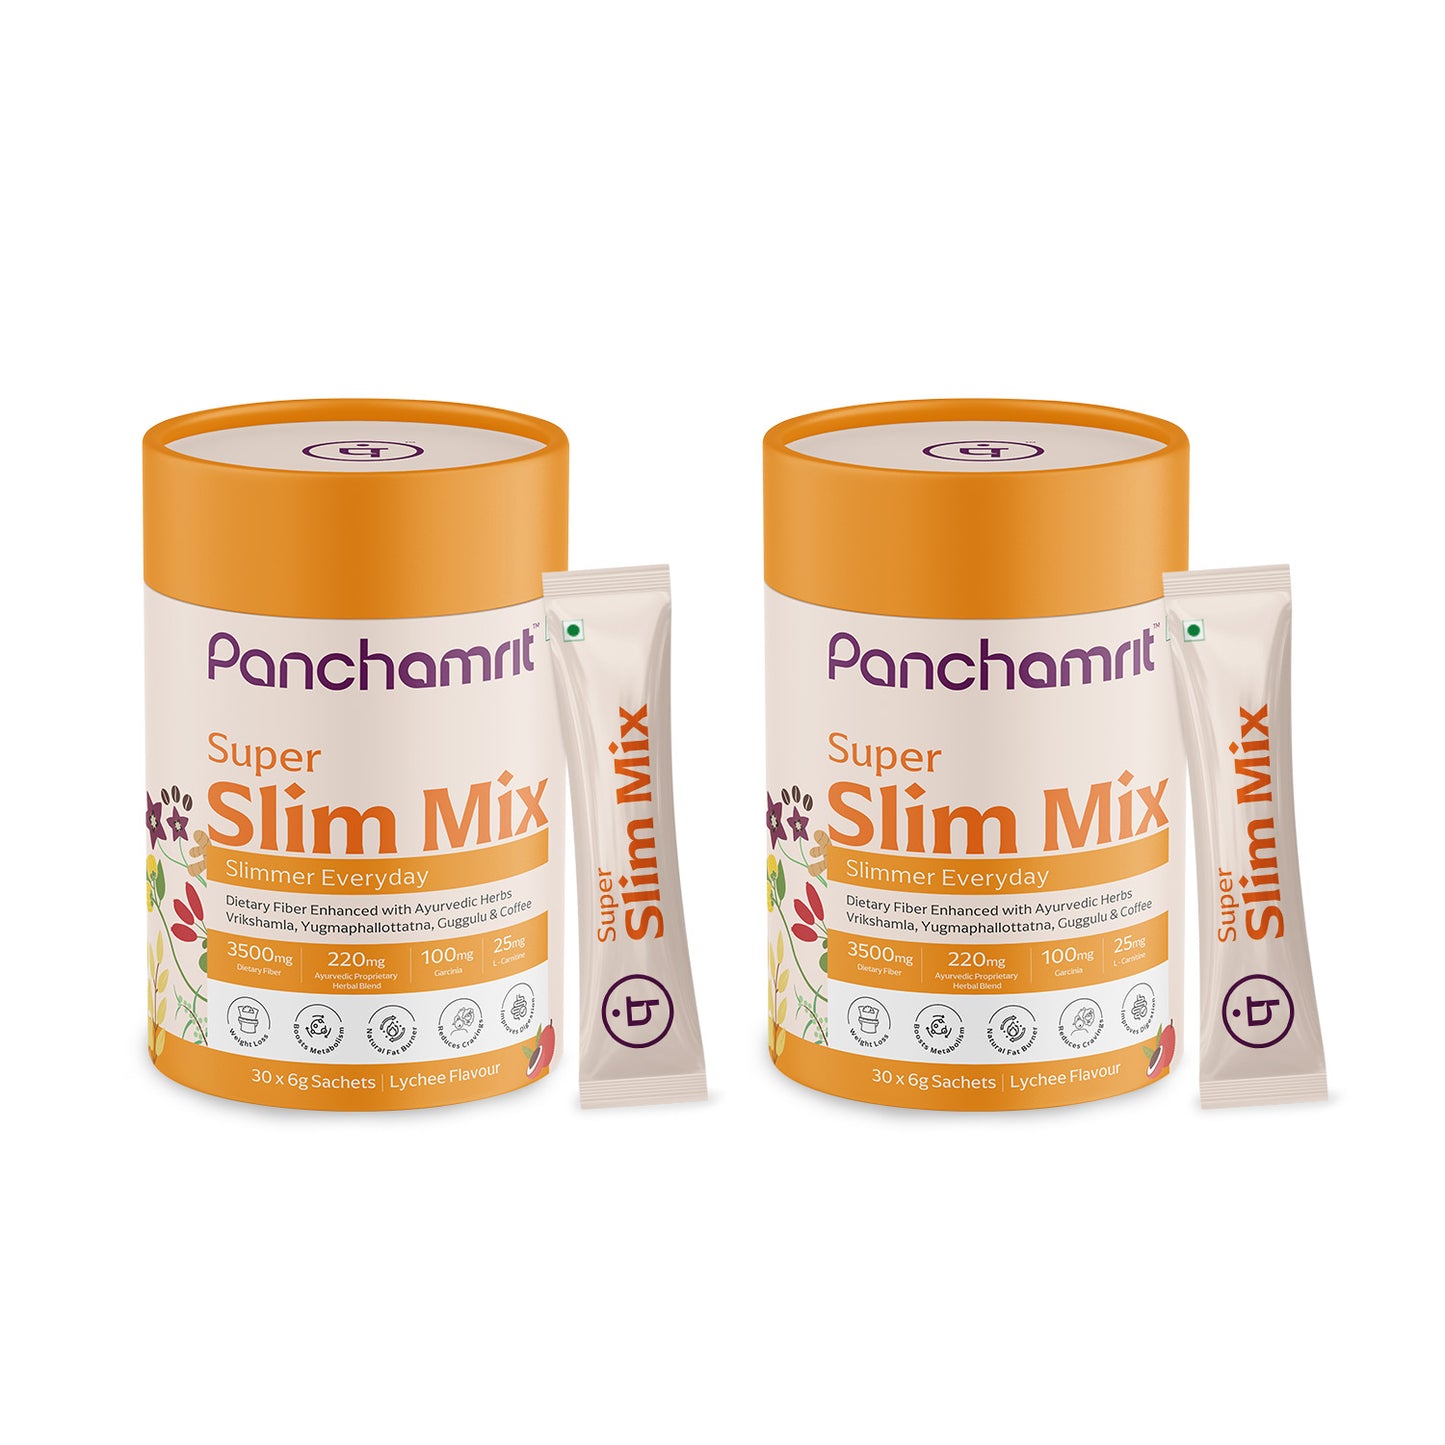 Panchamrit Super Slim Mix Powder| Lychee Flavour